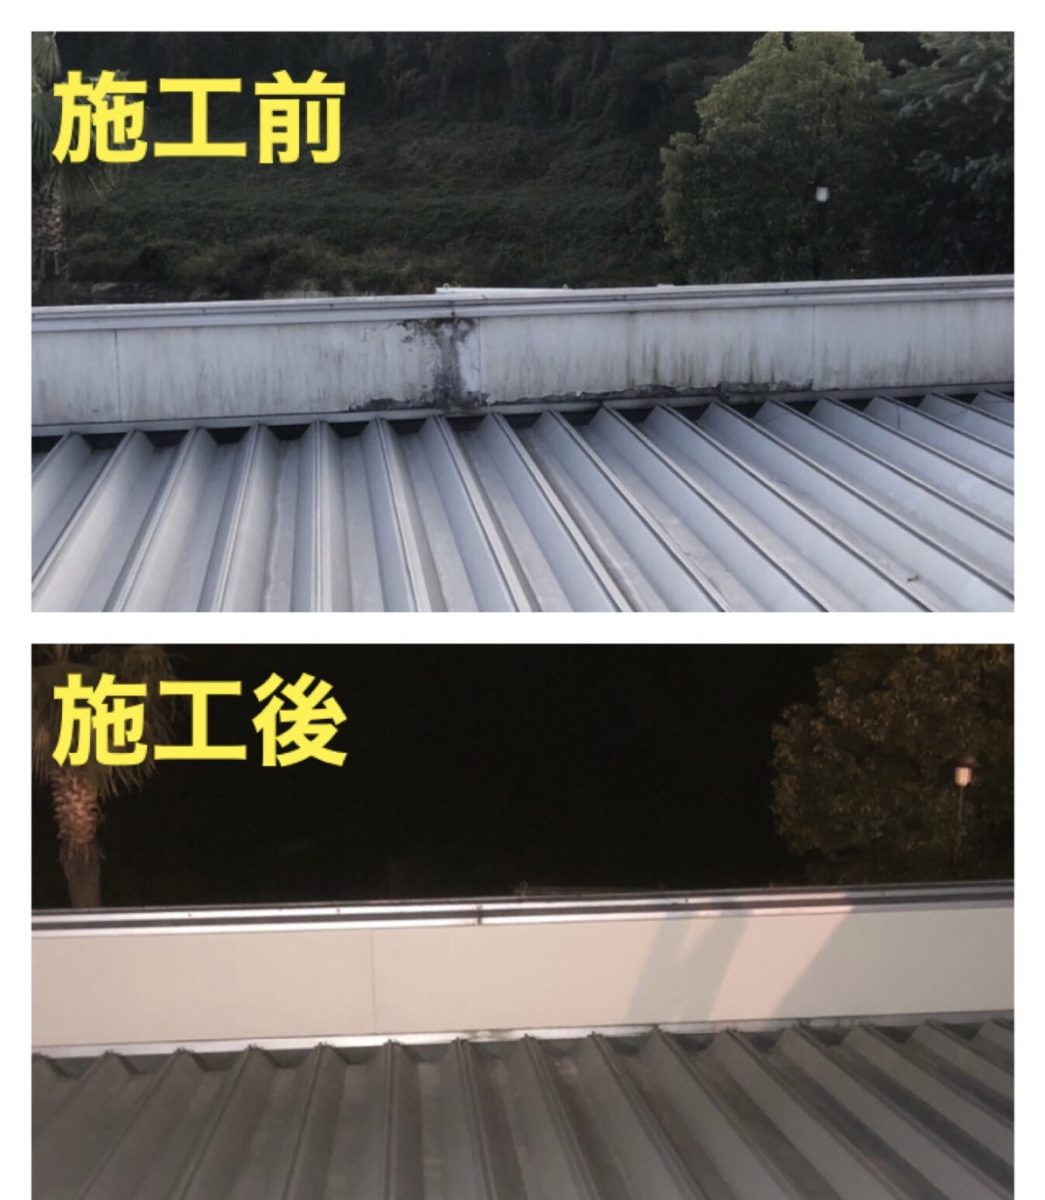 可児市で陸屋根のパラペット張替え工事を行いました 東浦 知多でリフォーム 外壁塗装なら河建株式会社